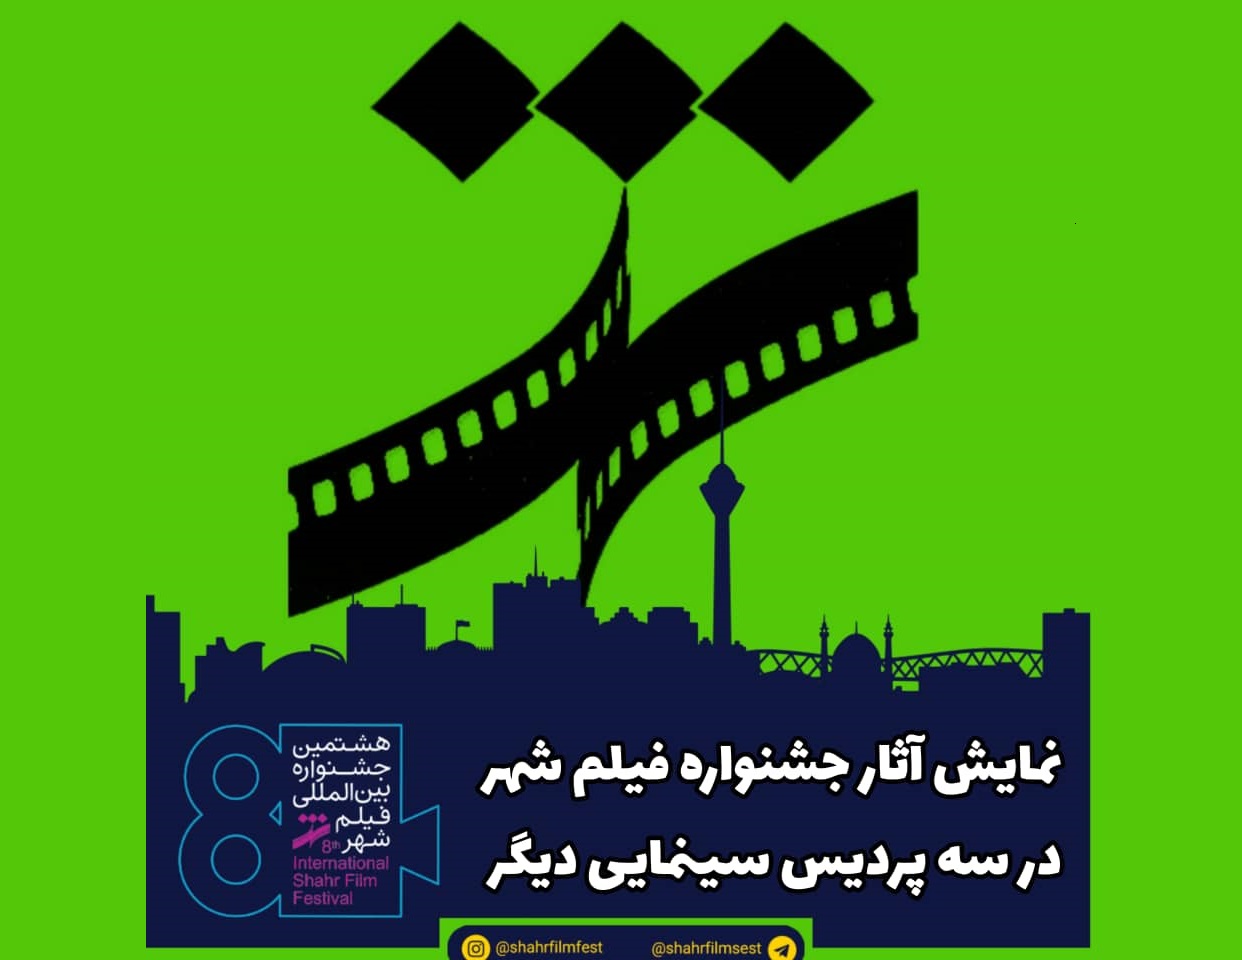 نمایش آثار جشنواره فیلم شهر در سه پردیس سینمایی دیگر